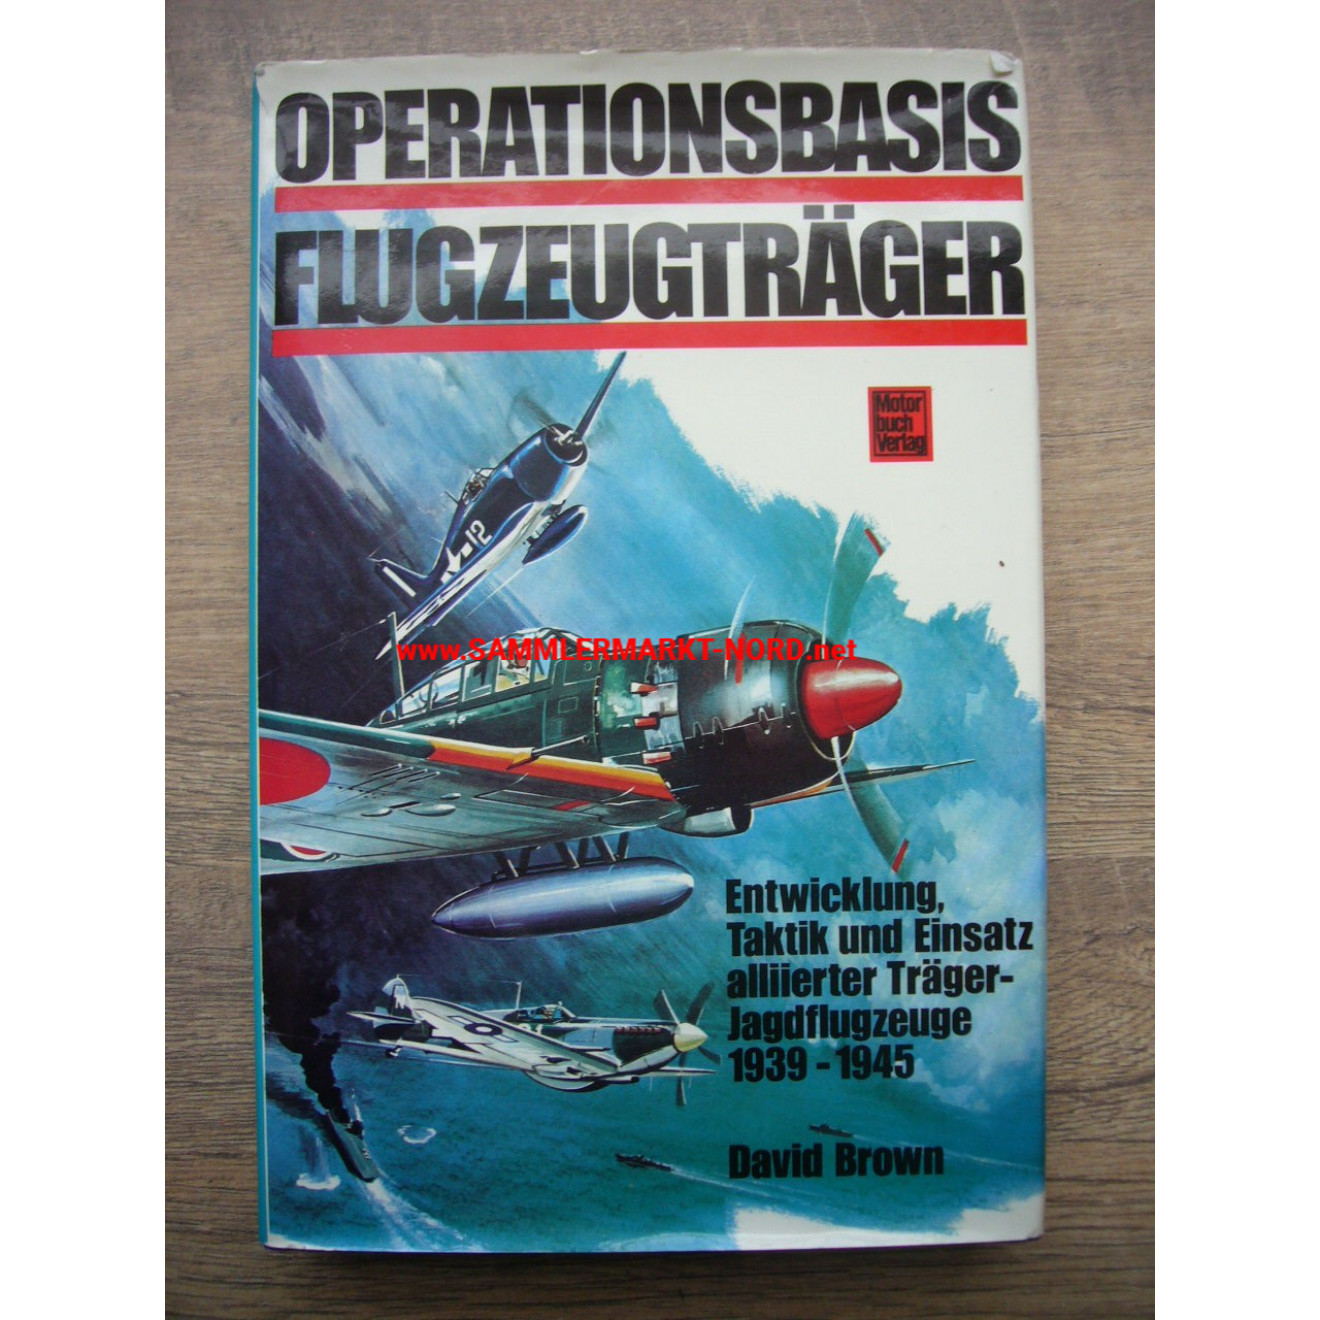 Operationsbasis Flugzeugträger - Entwicklung, Taktik und Einsatz alliierter Träger-Jagdflugzeuge 1939-45